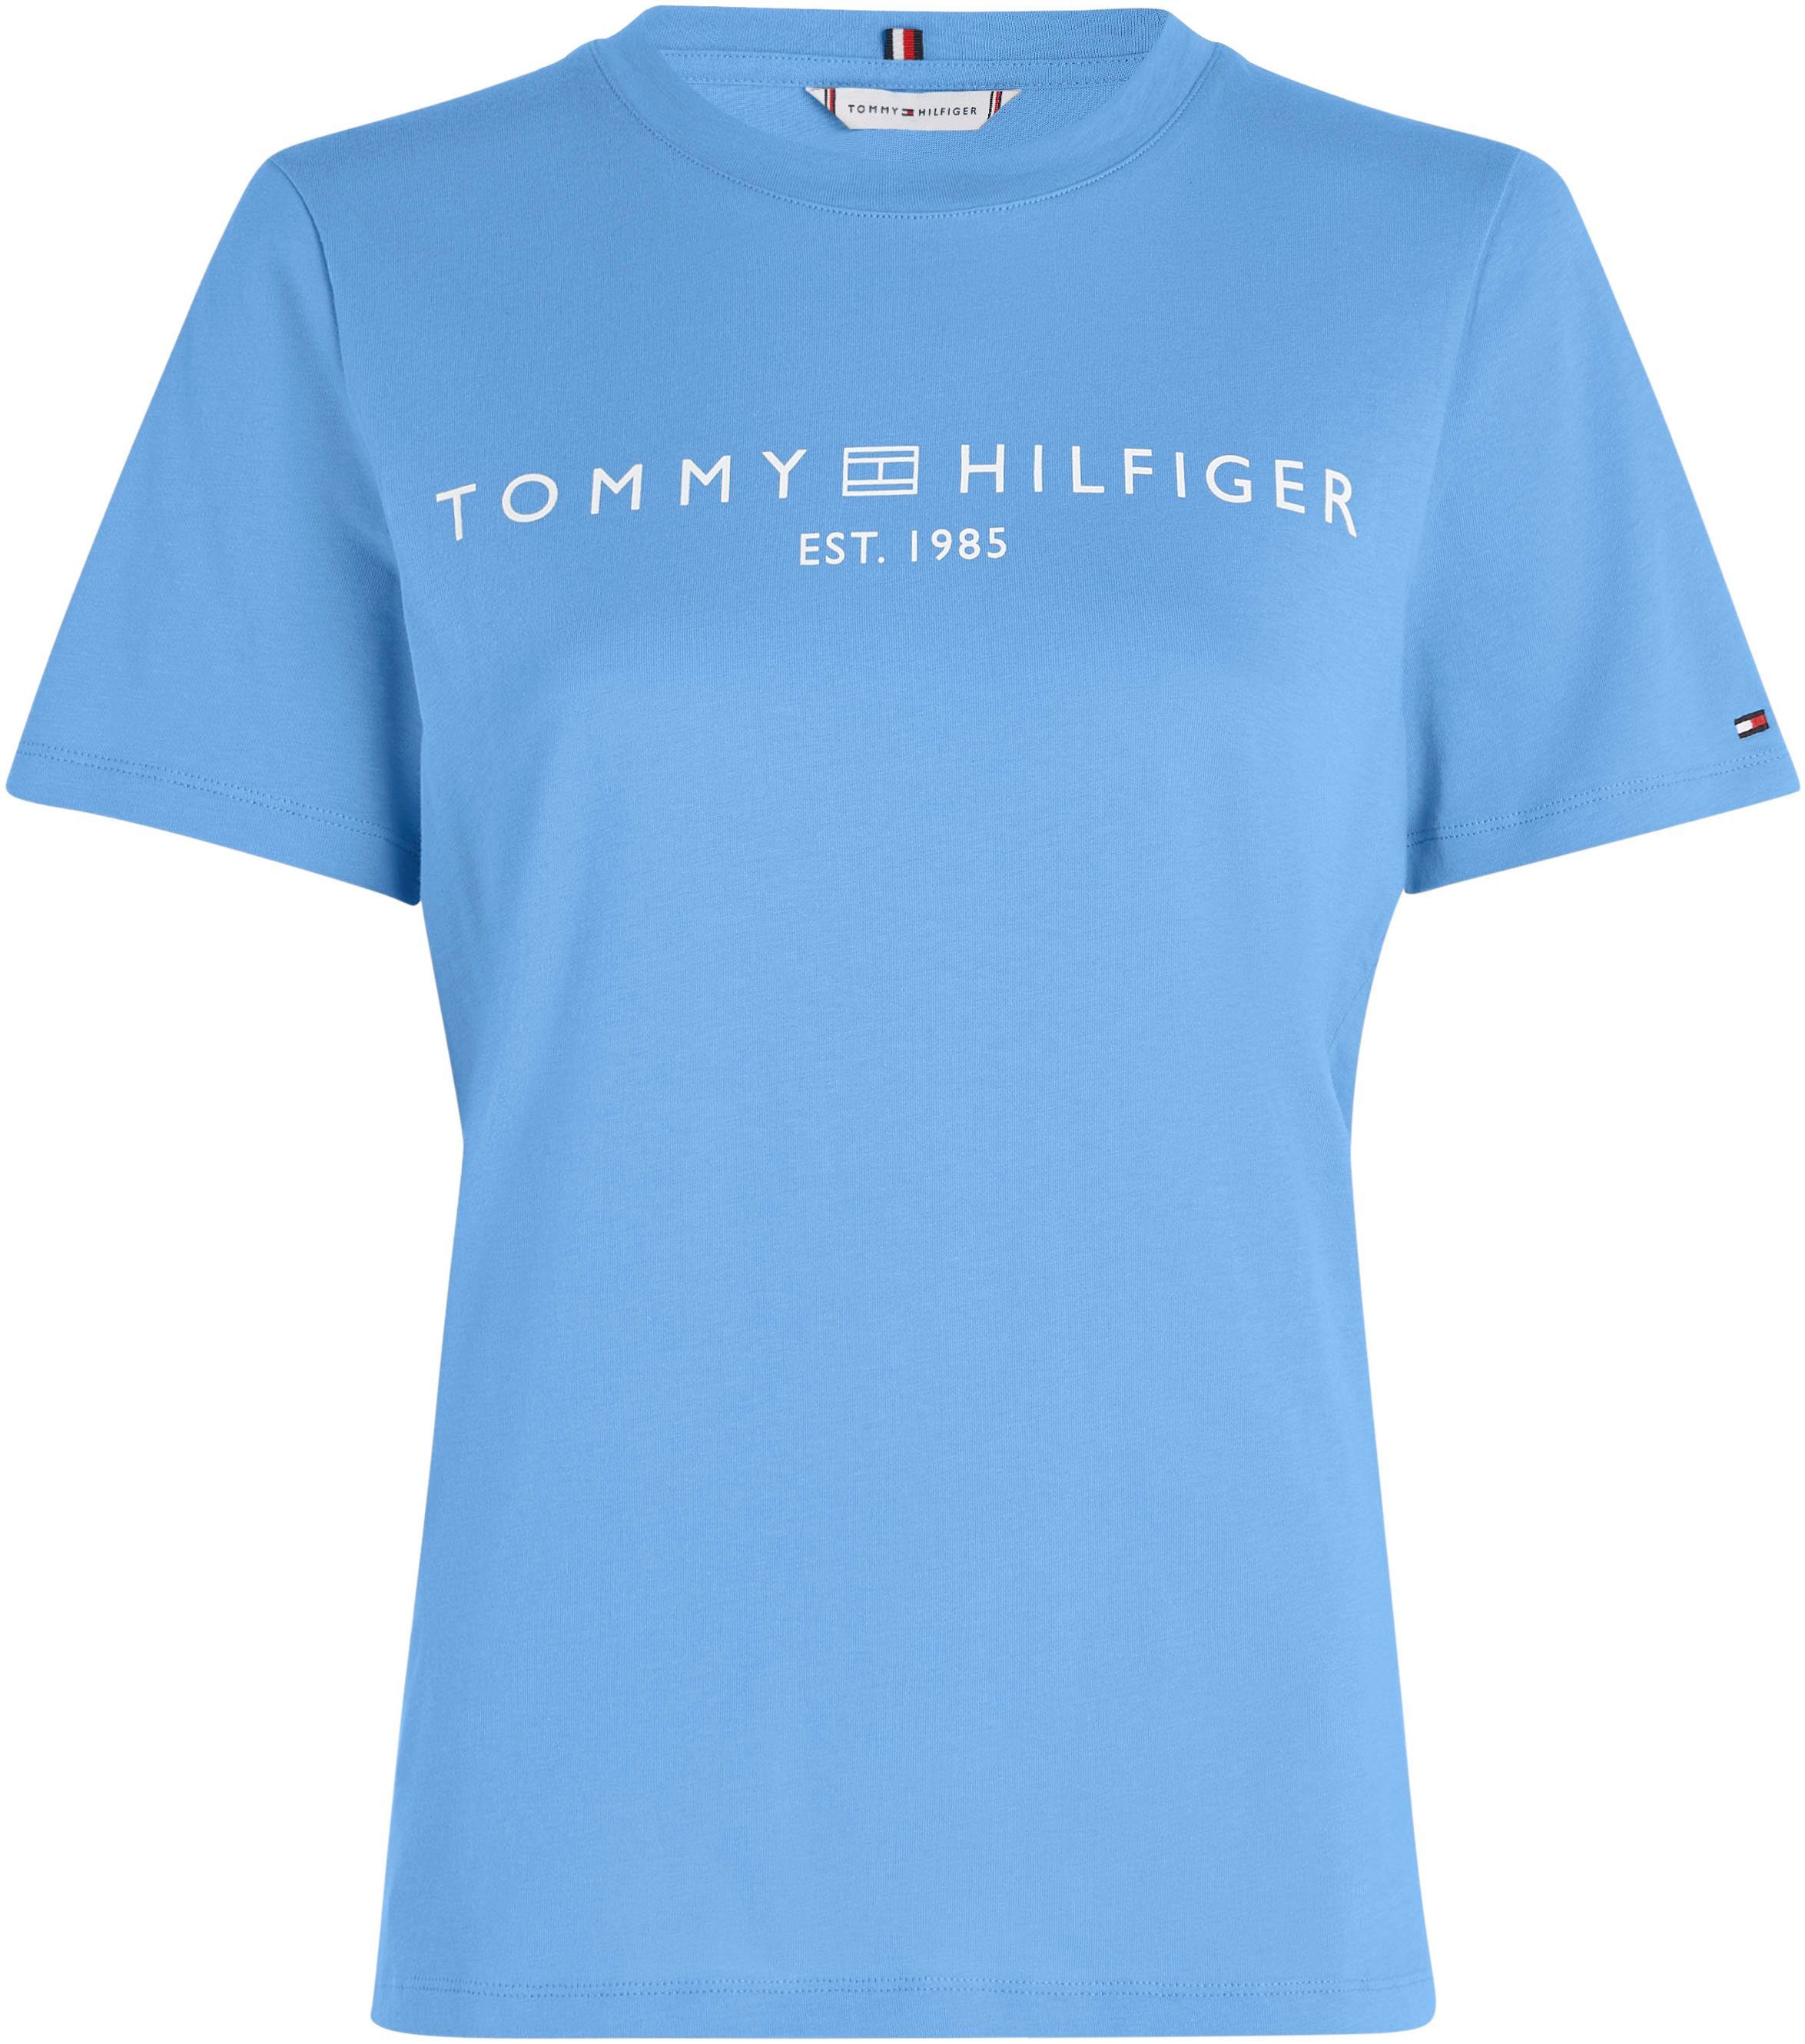 SS auf T-Shirt CORP Blue mit Markenlabel Tommy Hilfiger LOGO der REG Brust C-NK Spell